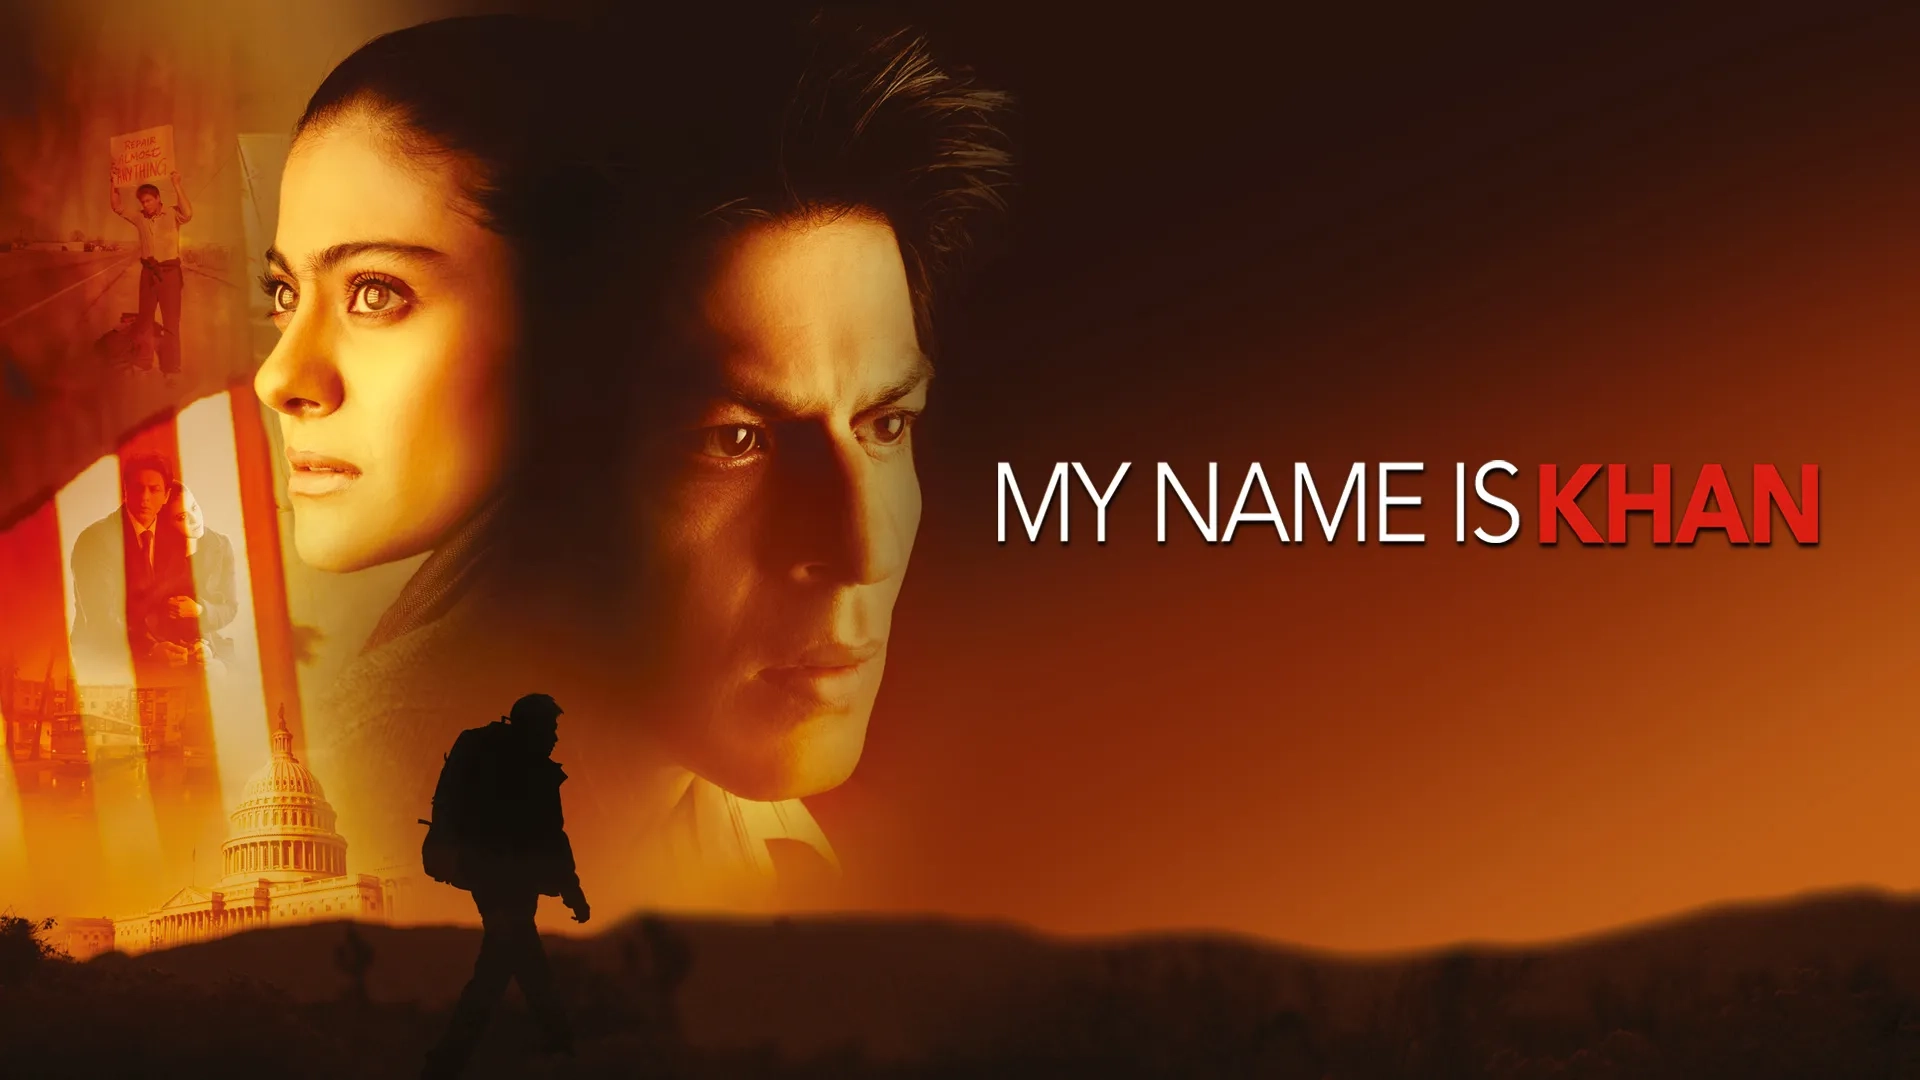 نام من خان است  (My Name is Khan)